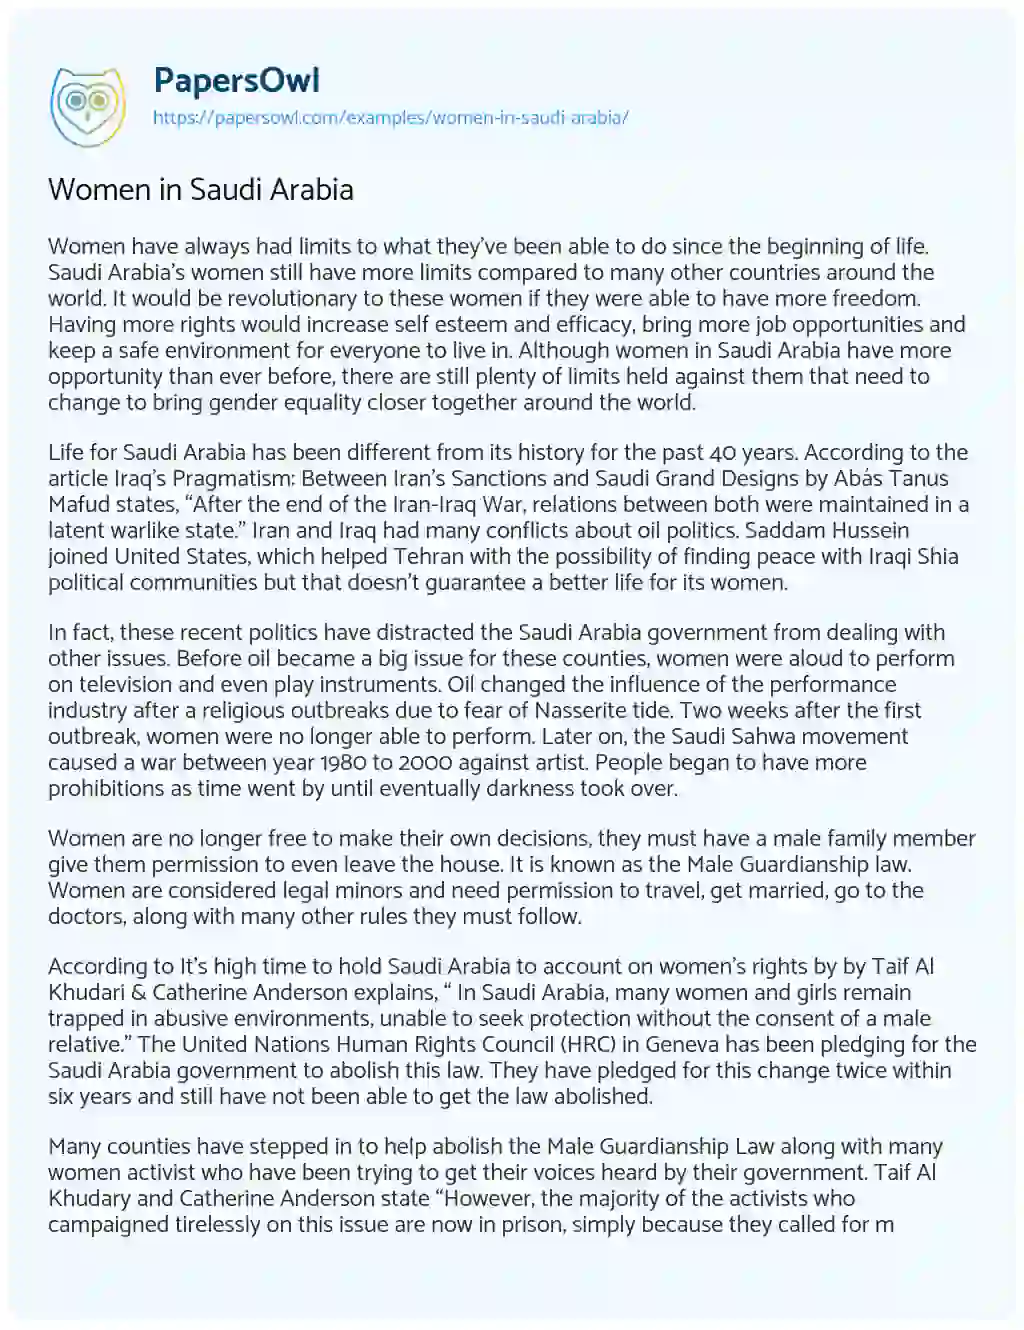 Women in Saudi Arabia essay